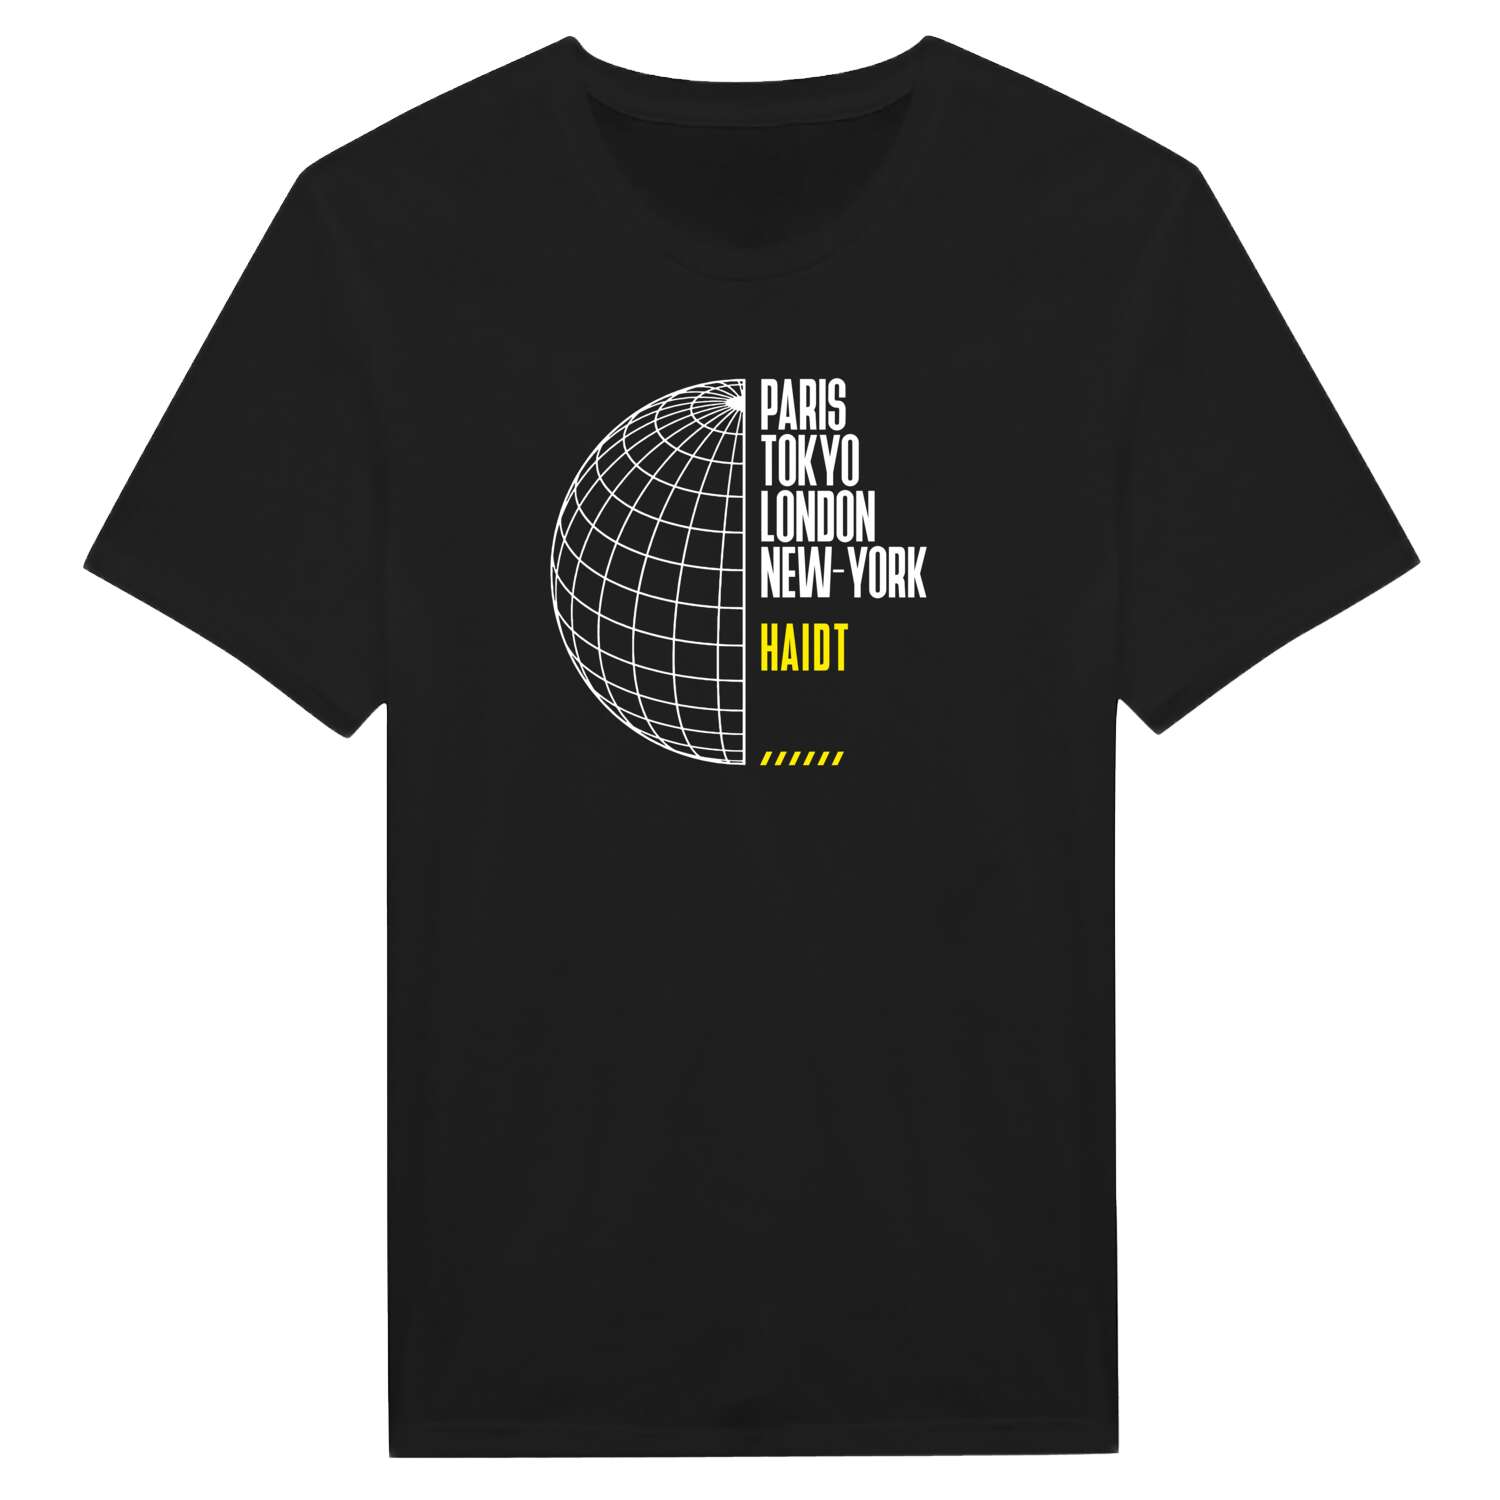 Haidt T-Shirt »Paris Tokyo London«